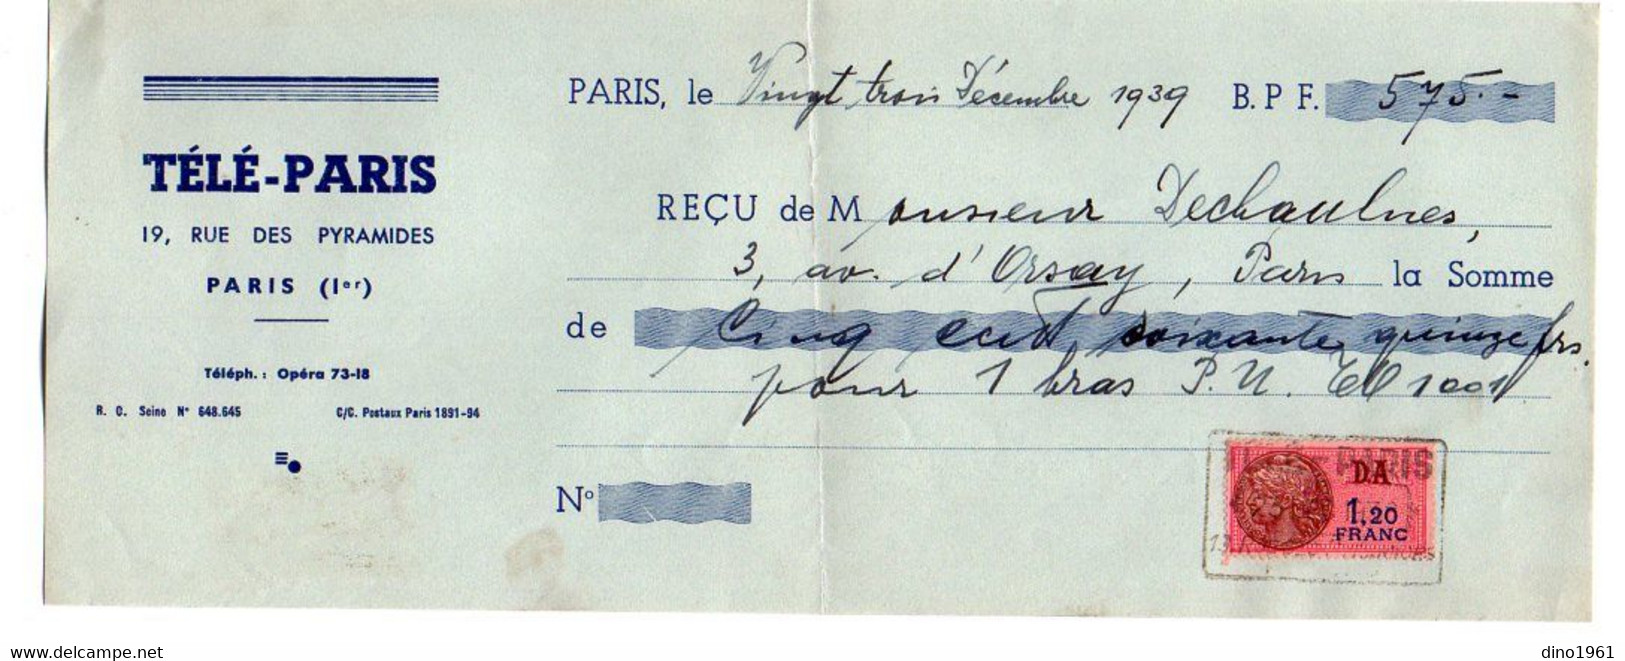 VP20.583 - PARIS 1939 - Lettre De Change - Télé - PARIS Pour Mr Le Duc De CHAULNES - Wechsel